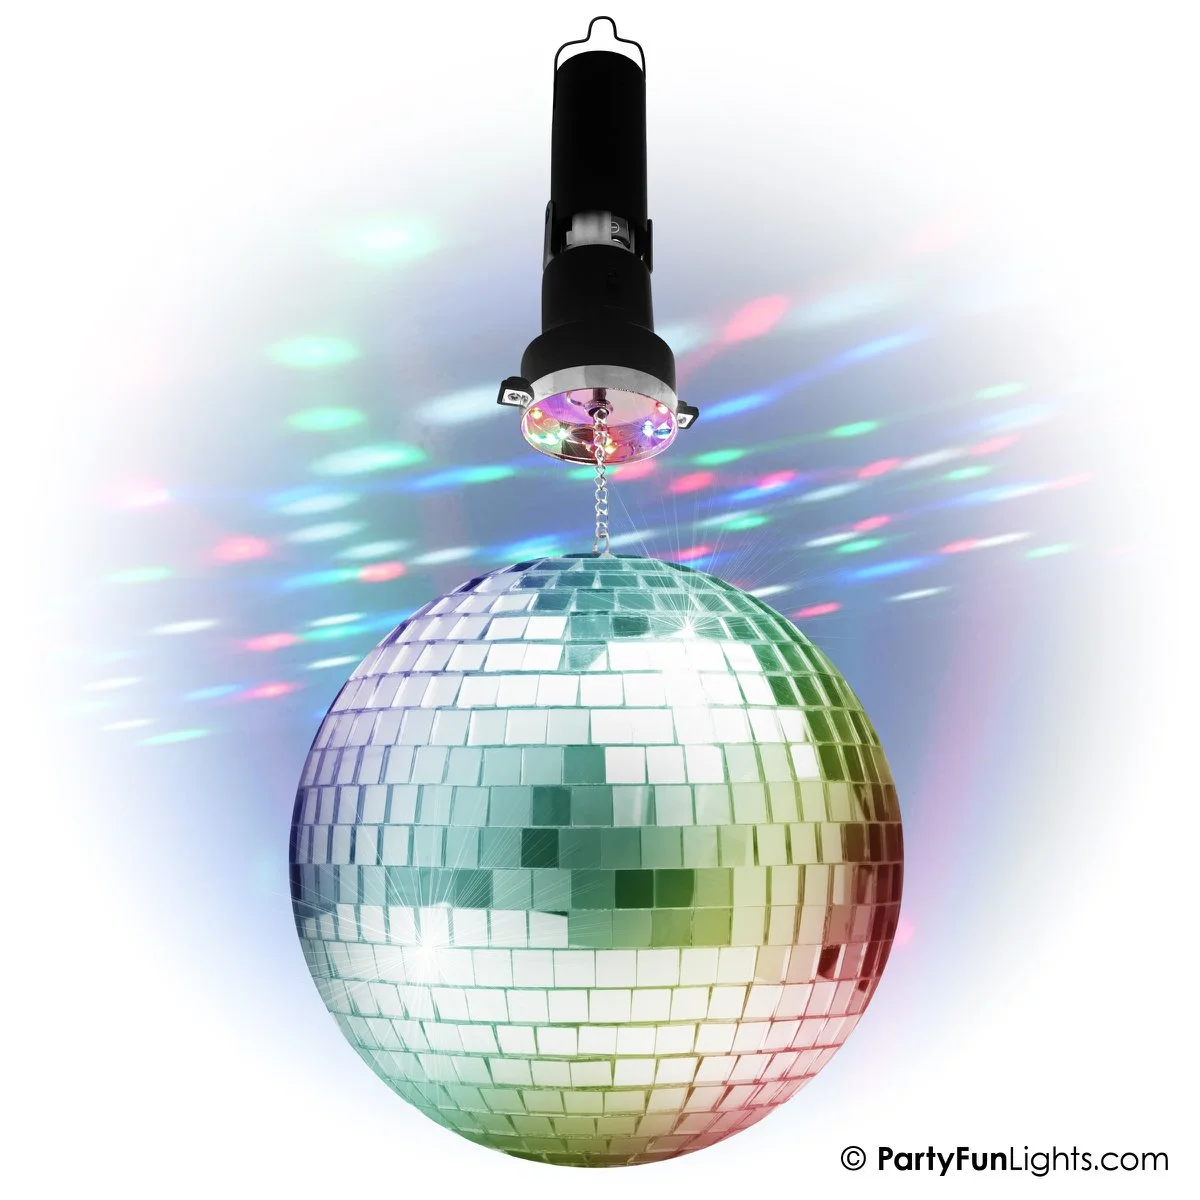 PartyFunLights – Rotierendes Spiegelkugel-  inklusive Motor – 20 cm große Spiegelkugel – 8 Lichtpunkte